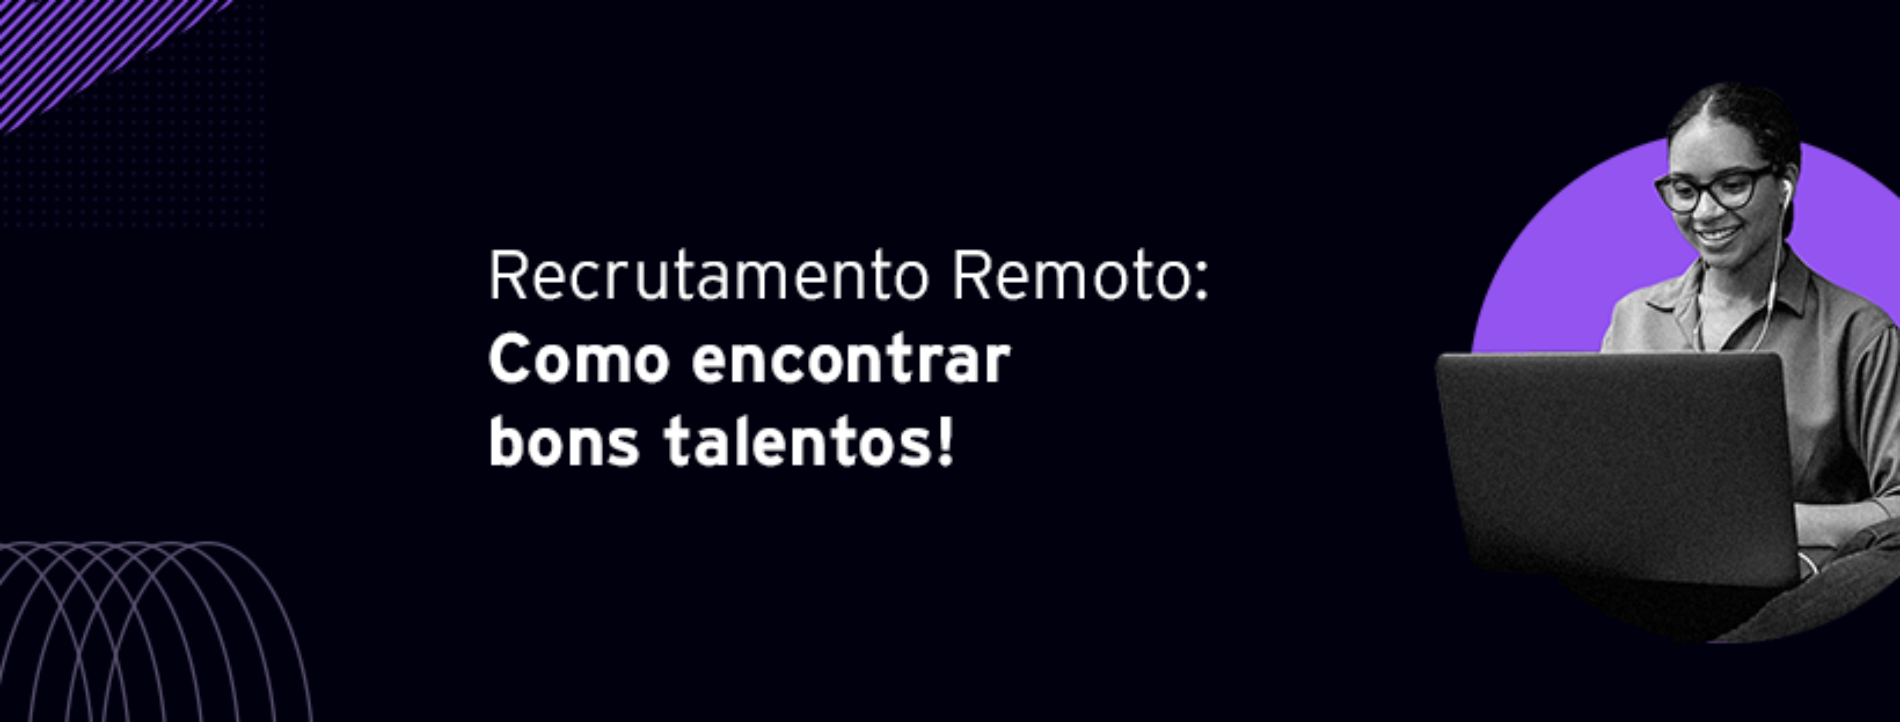 Recrutamento Remoto: Saiba como encontrar bons talentos!